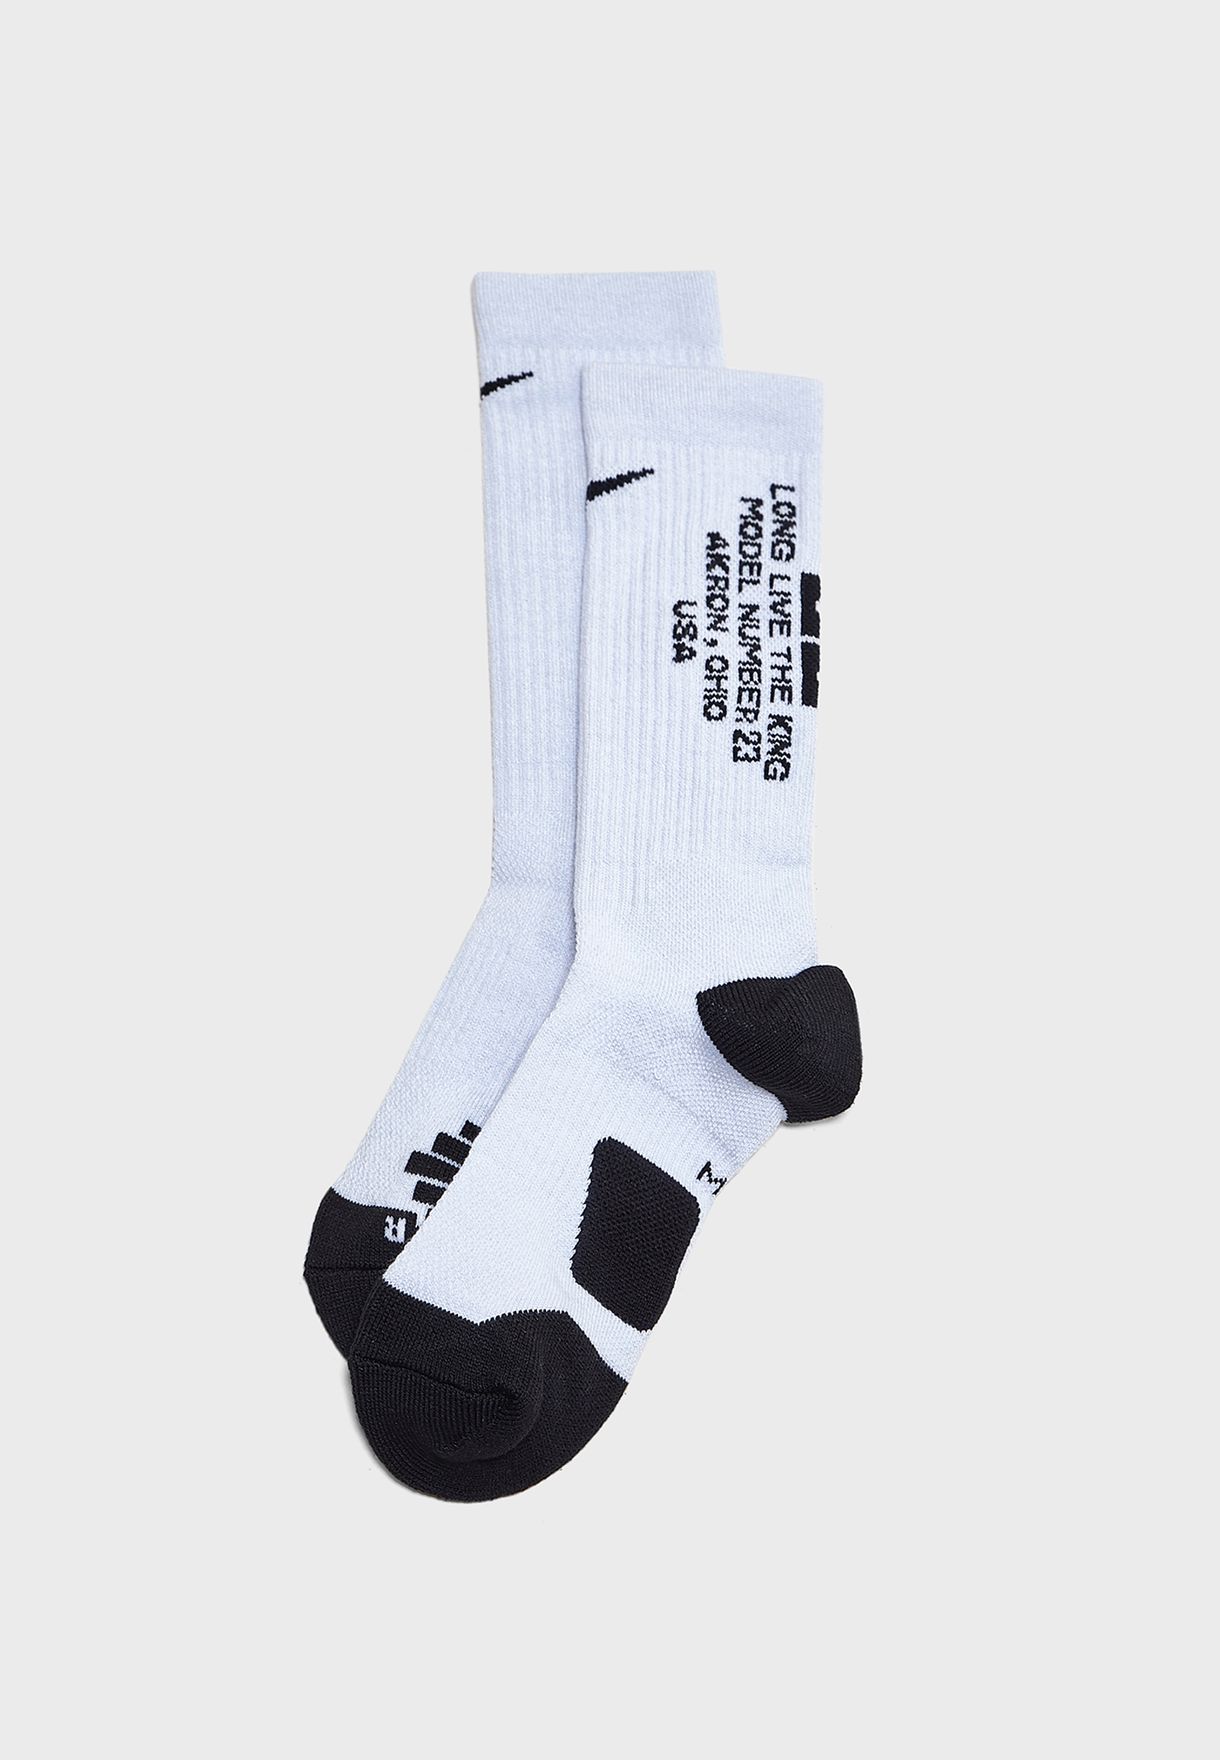 lebron socks elite